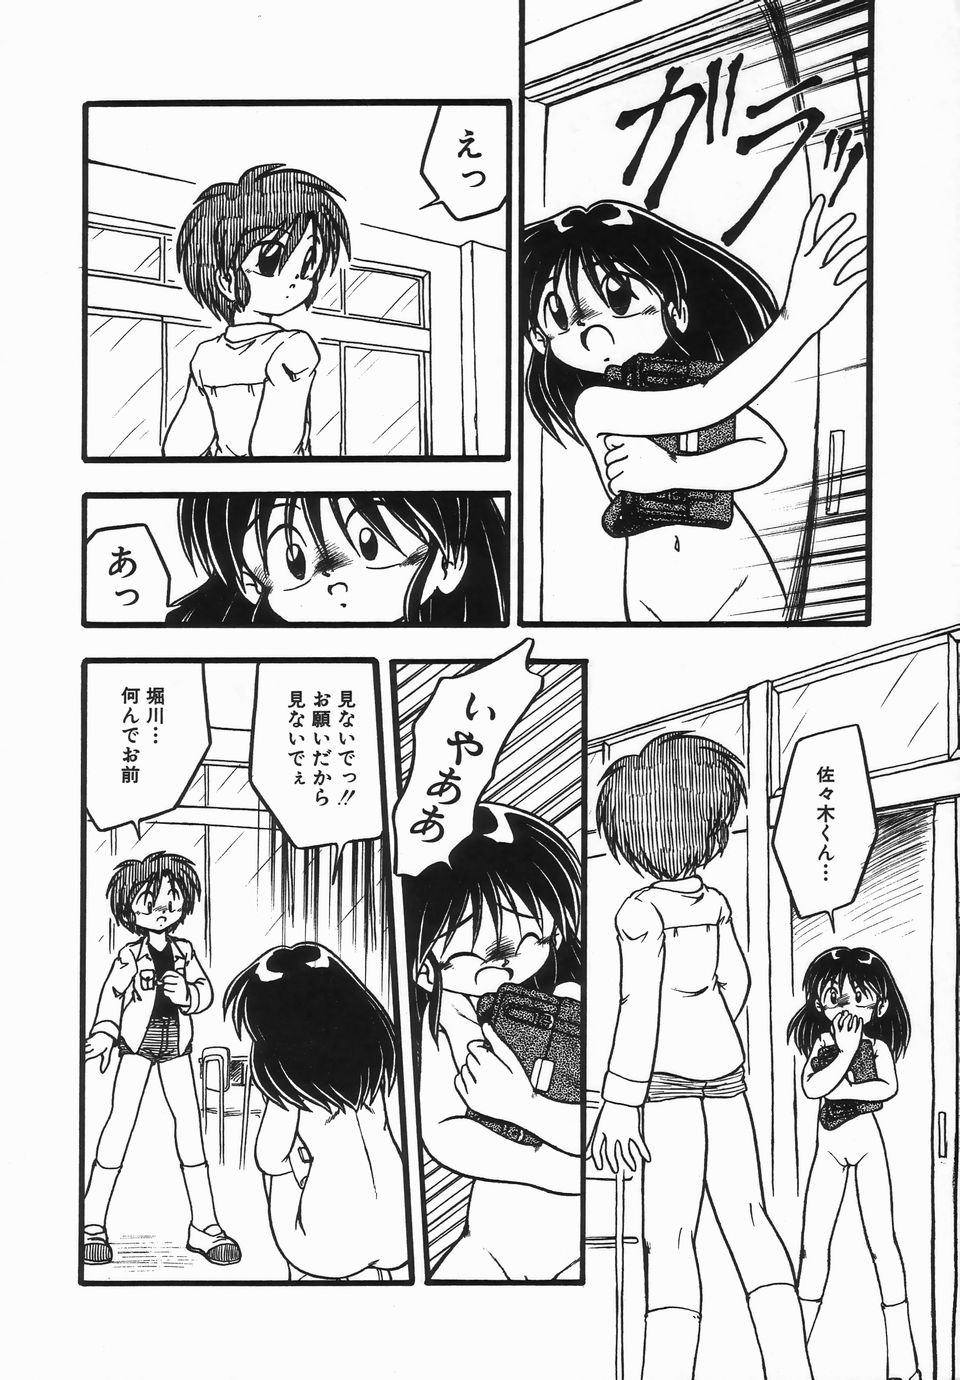 [DASH] Kanchou Shoujo - Enema Girl page 36 full